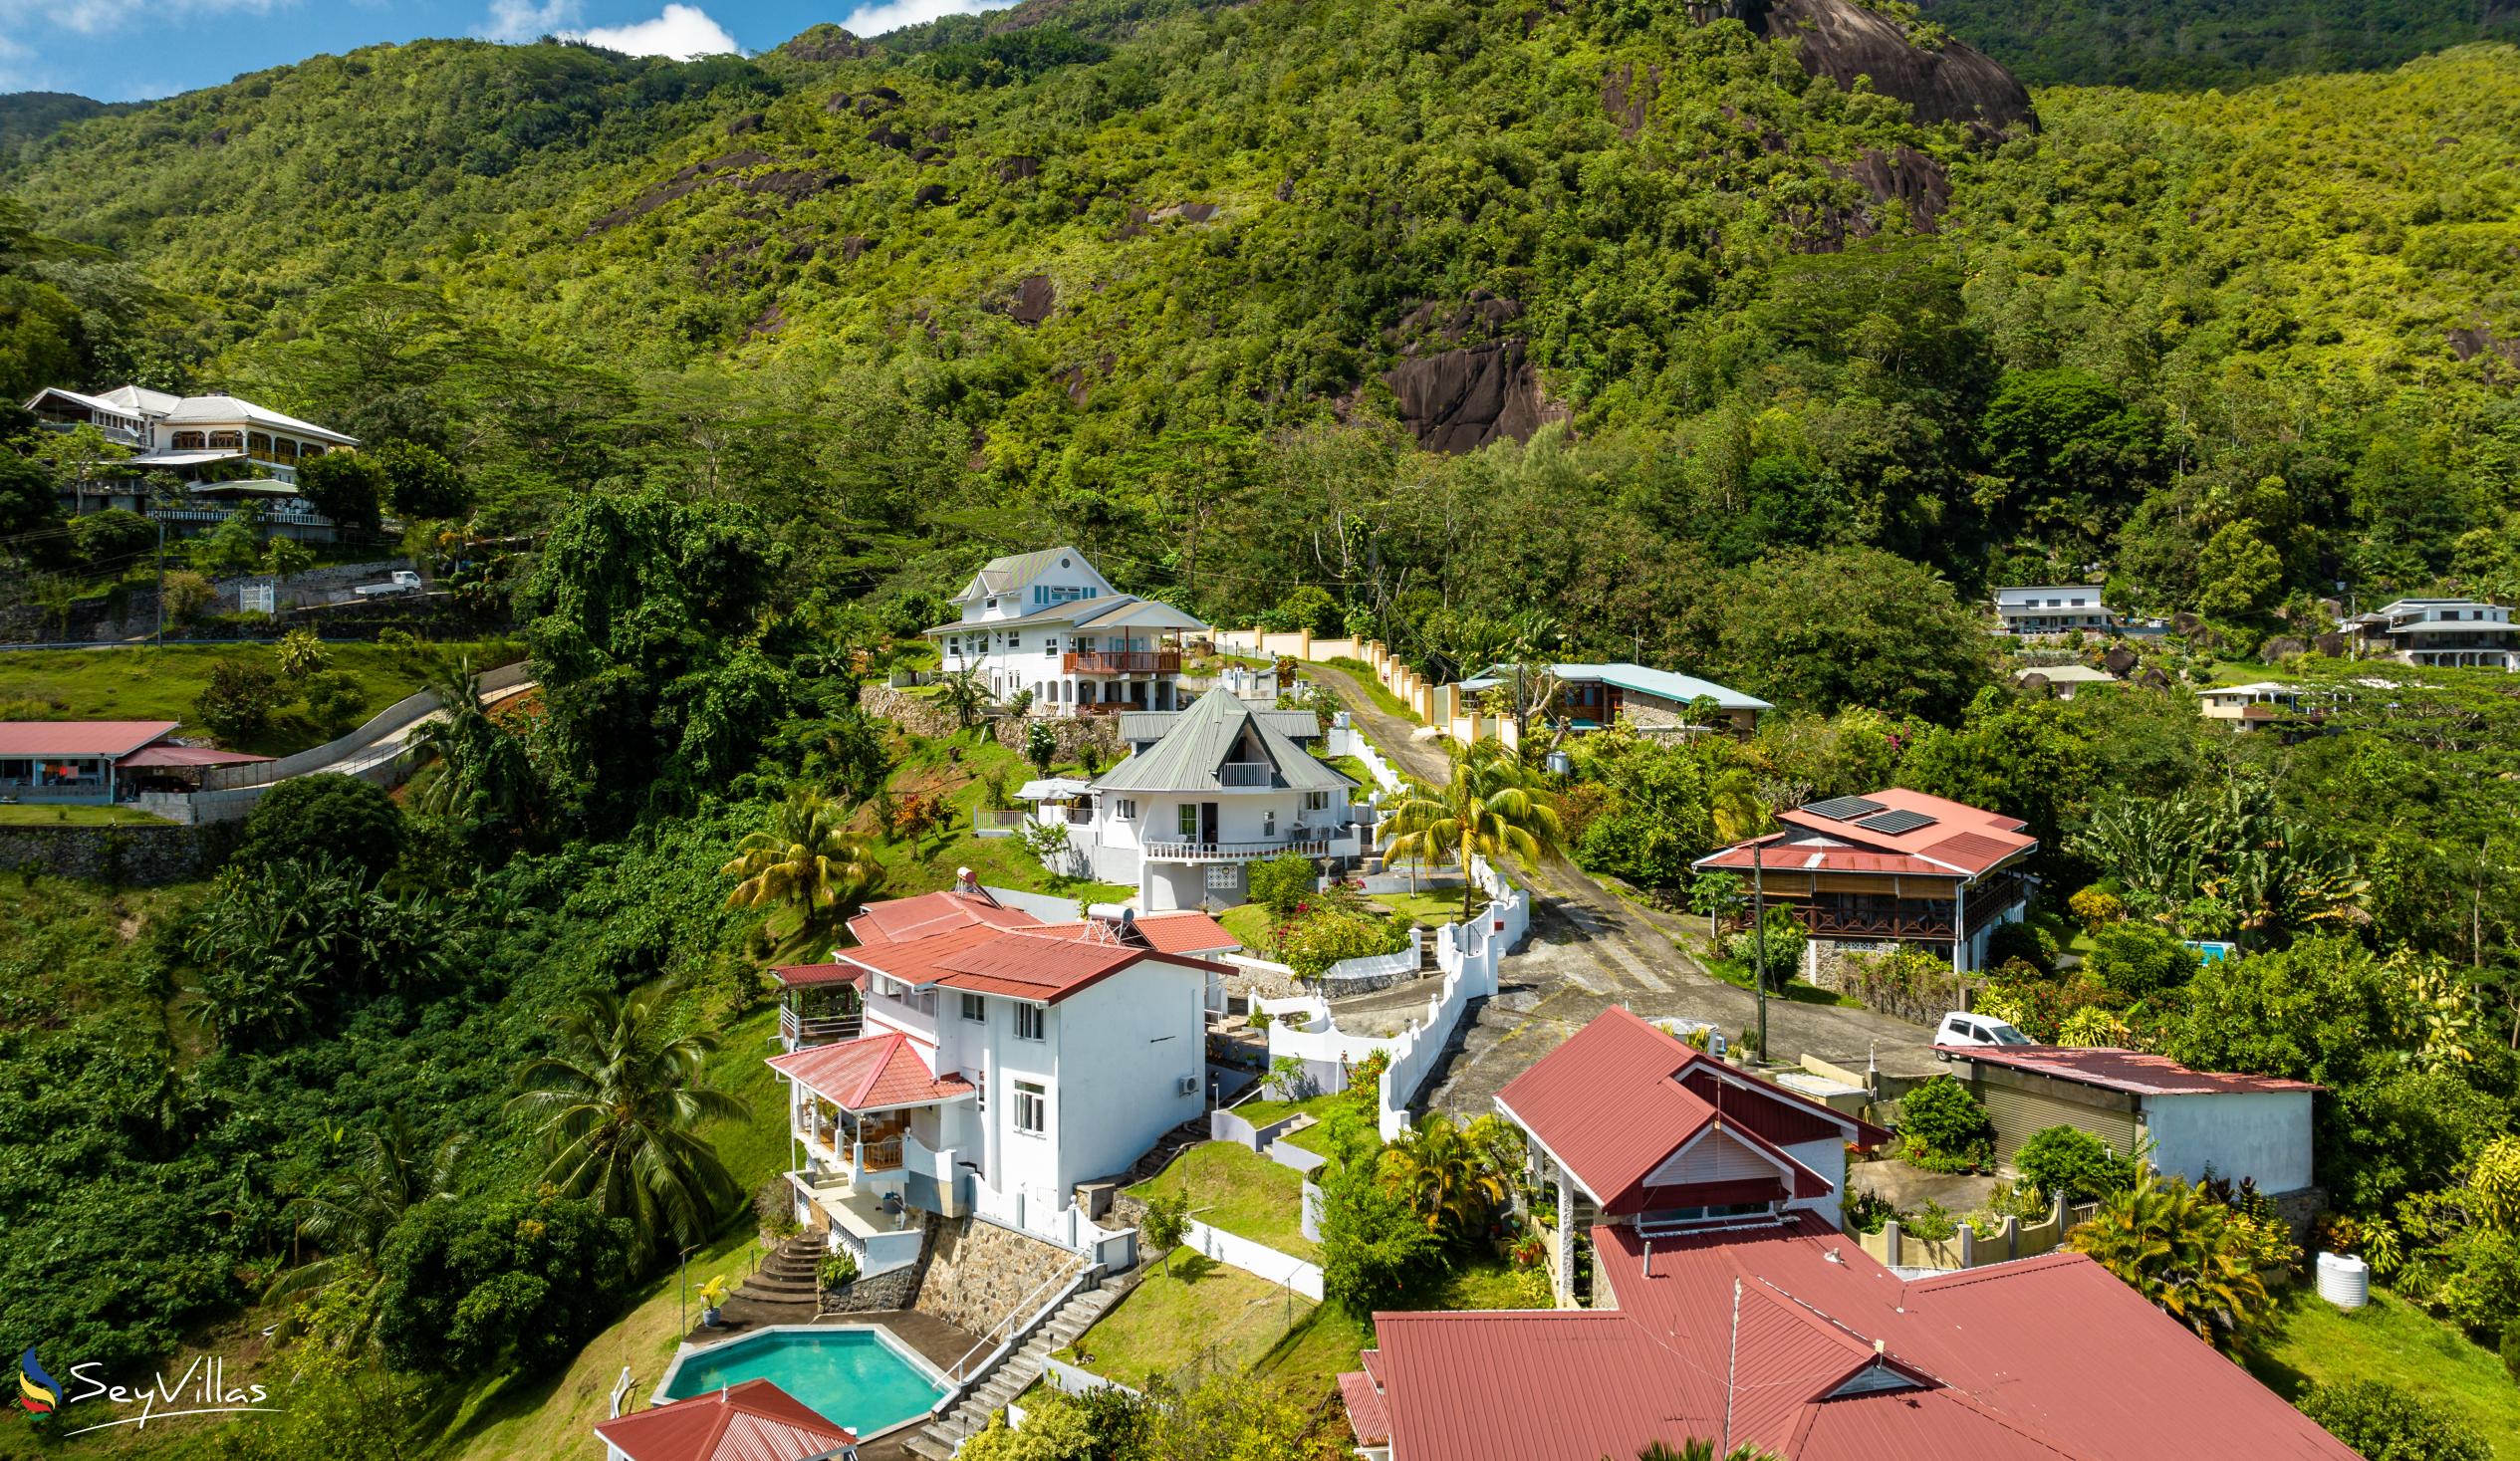 Photo 8: Casuarina Hill Villa - Outdoor area - Mahé (Seychelles)